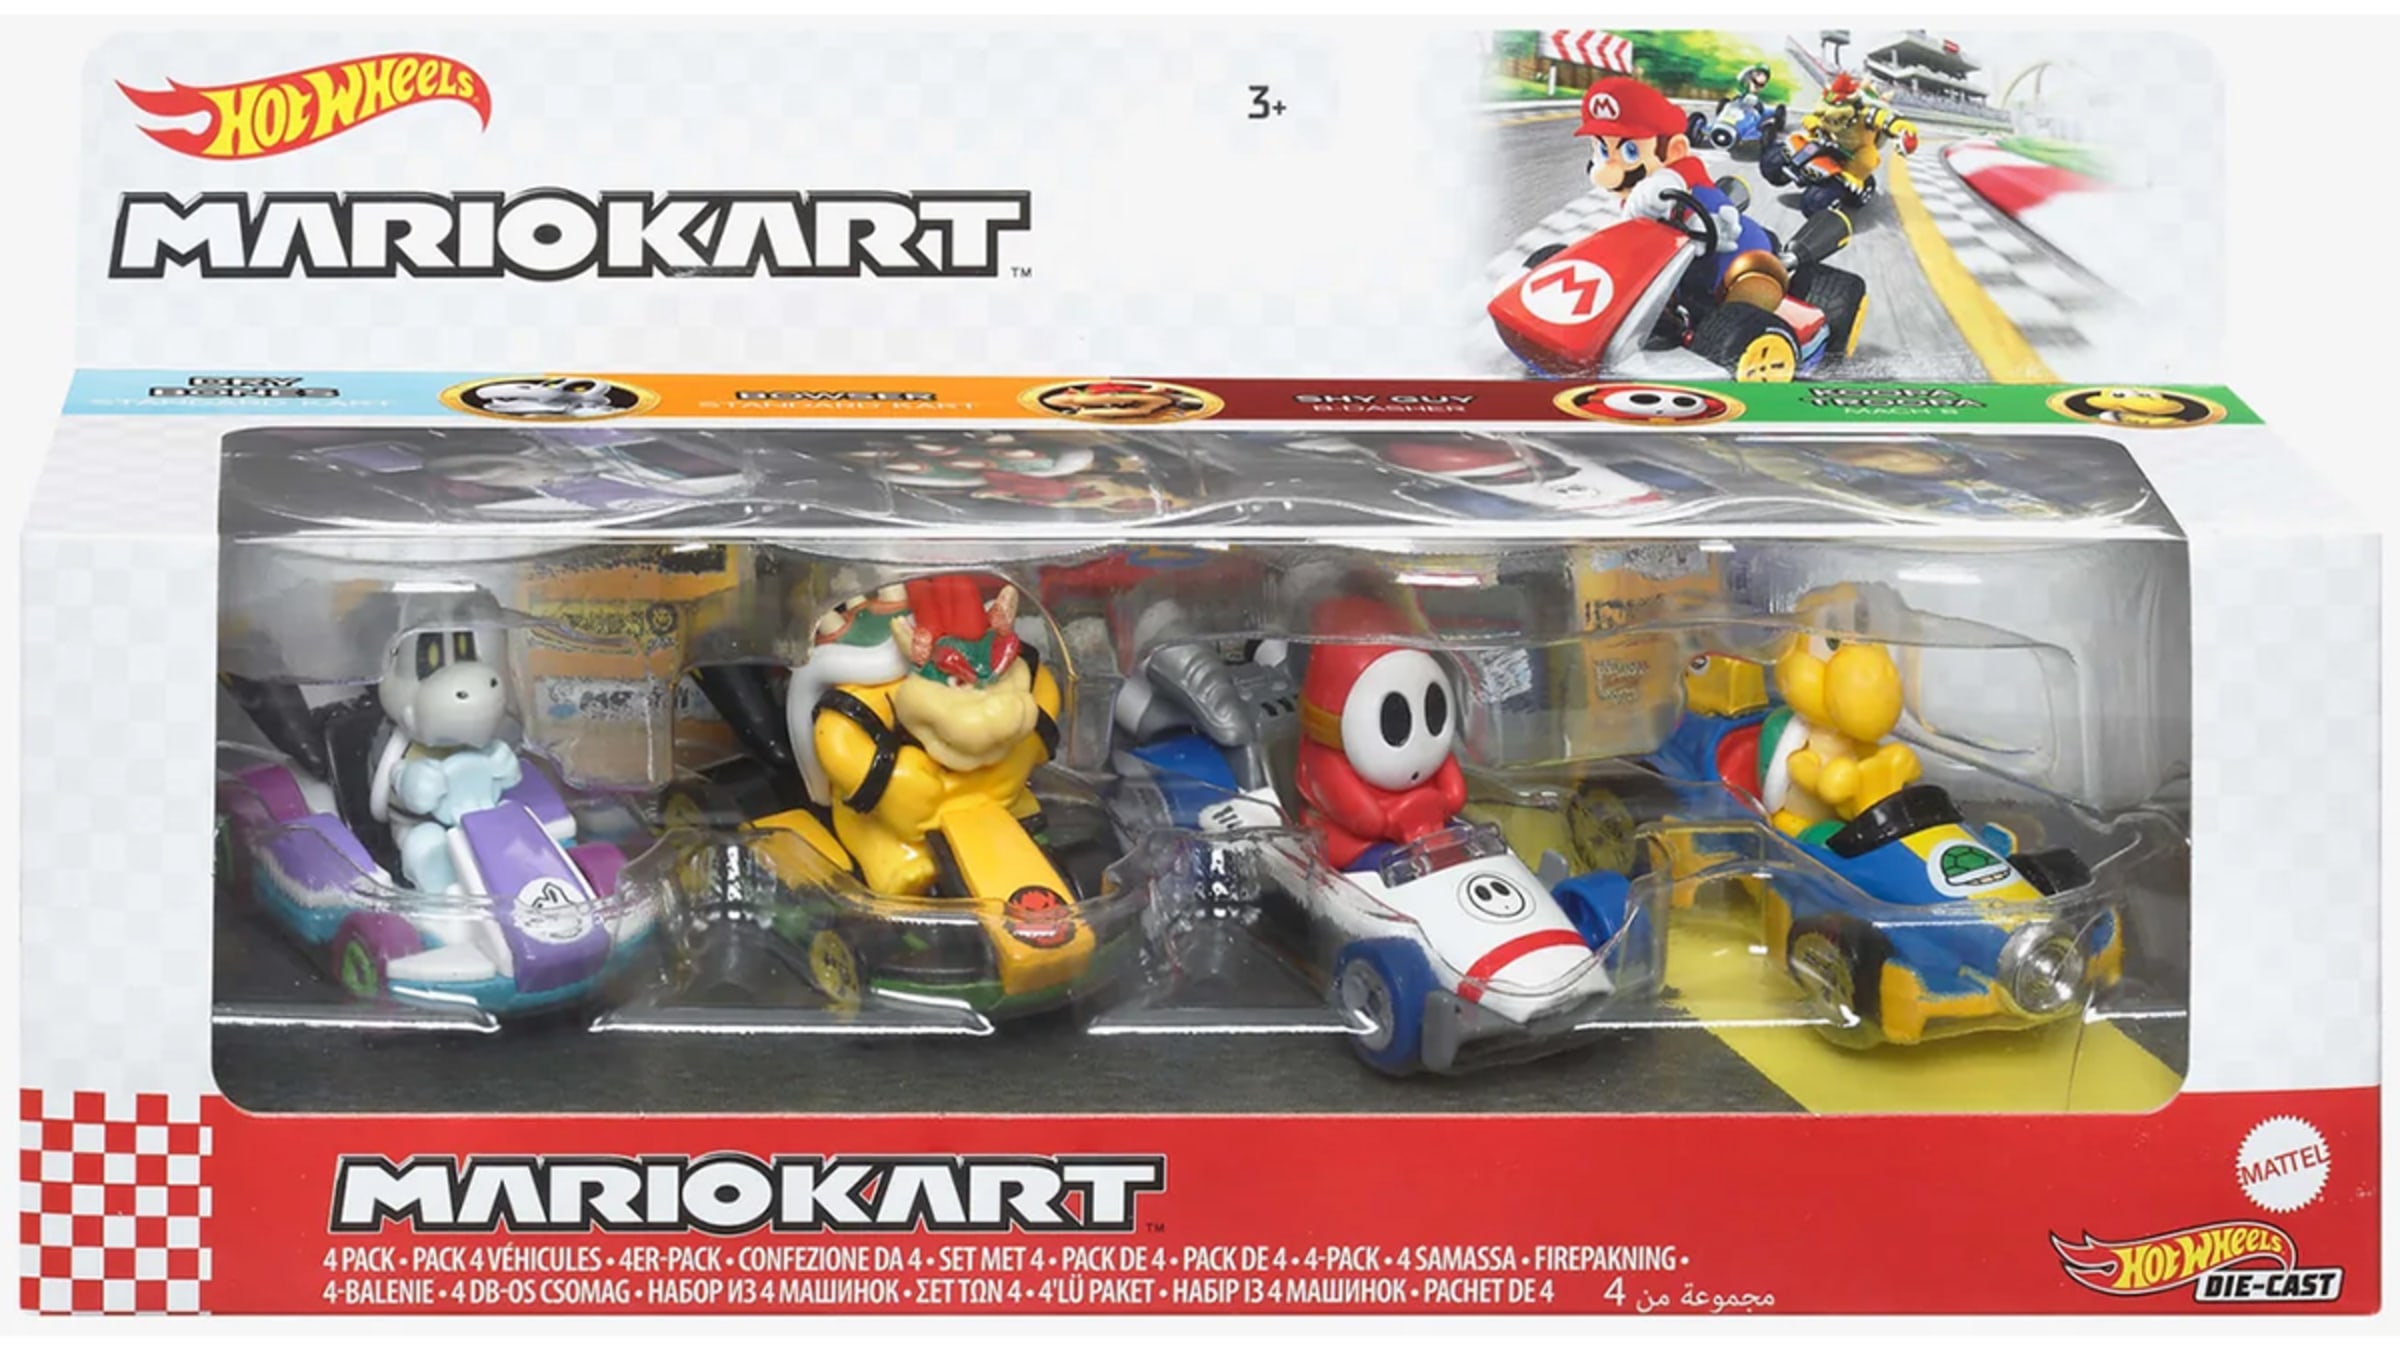 Hot Wheels Mario Kart 4-Pack - Koopa